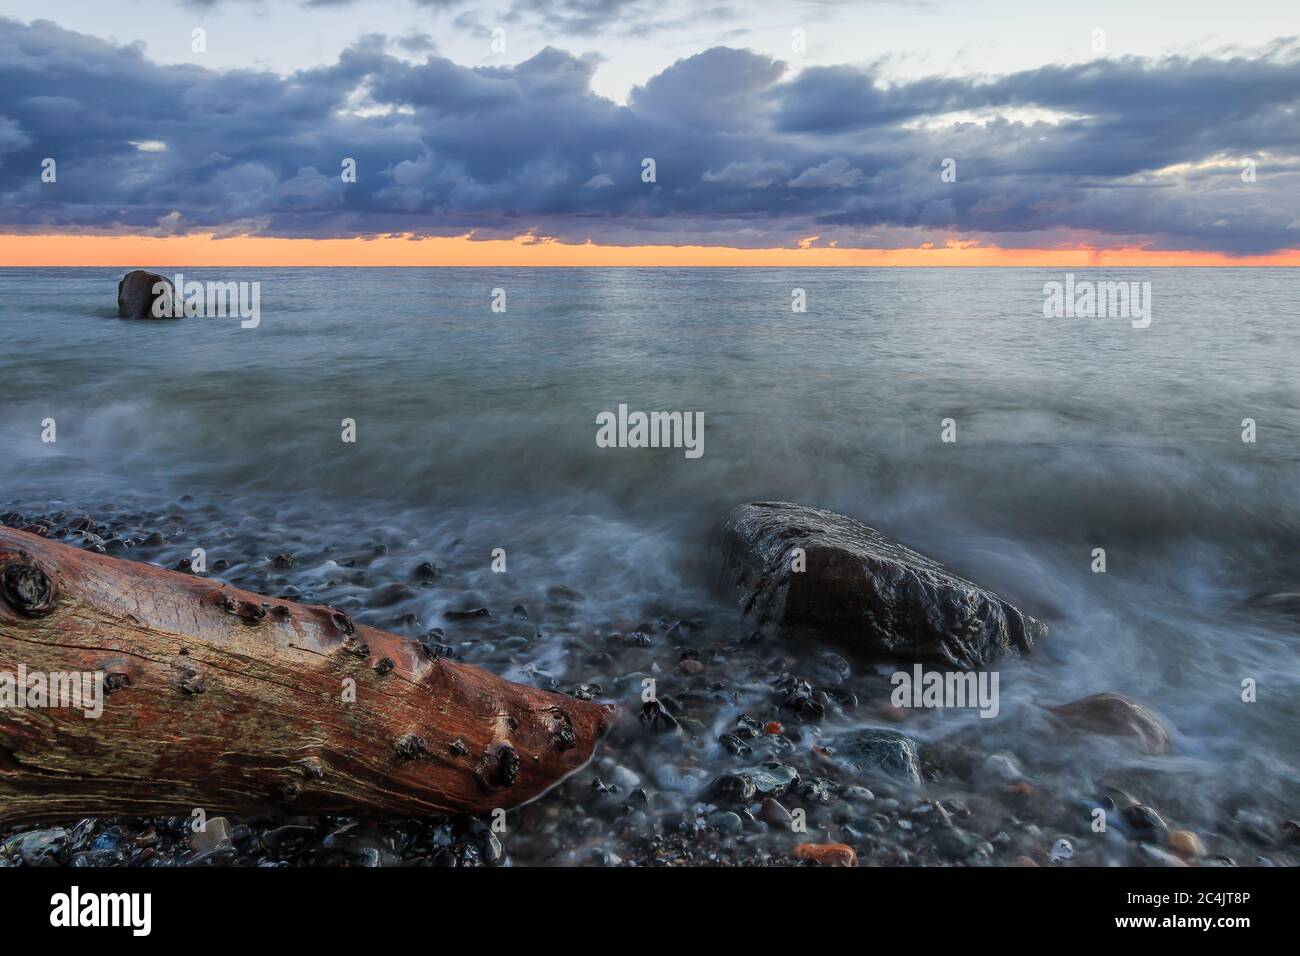 Küstenlinie am Morgen an der Ostsee. Dramatische Wolken bei Sonnenaufgang. Steinige Küste auf der Insel Rügen mit altem Baumstamm und großen Steinen Stockfoto